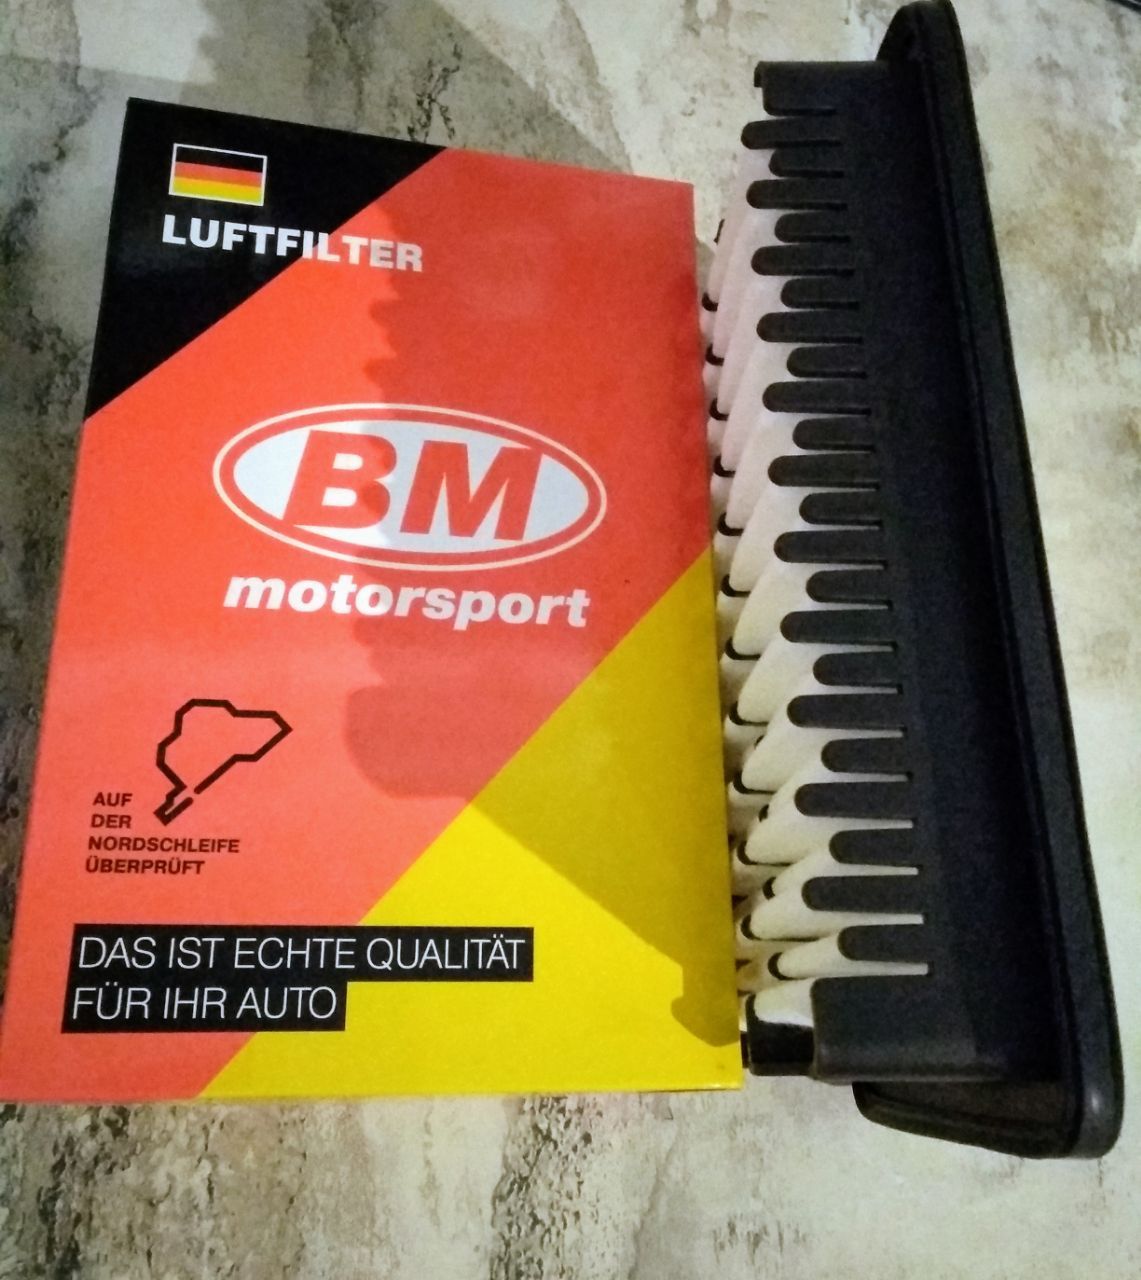 Bm фильтр воздушный. BM-Motorsport fa8020. BM-Motorsport фильтр воздушный. Фильтр для BM d750.